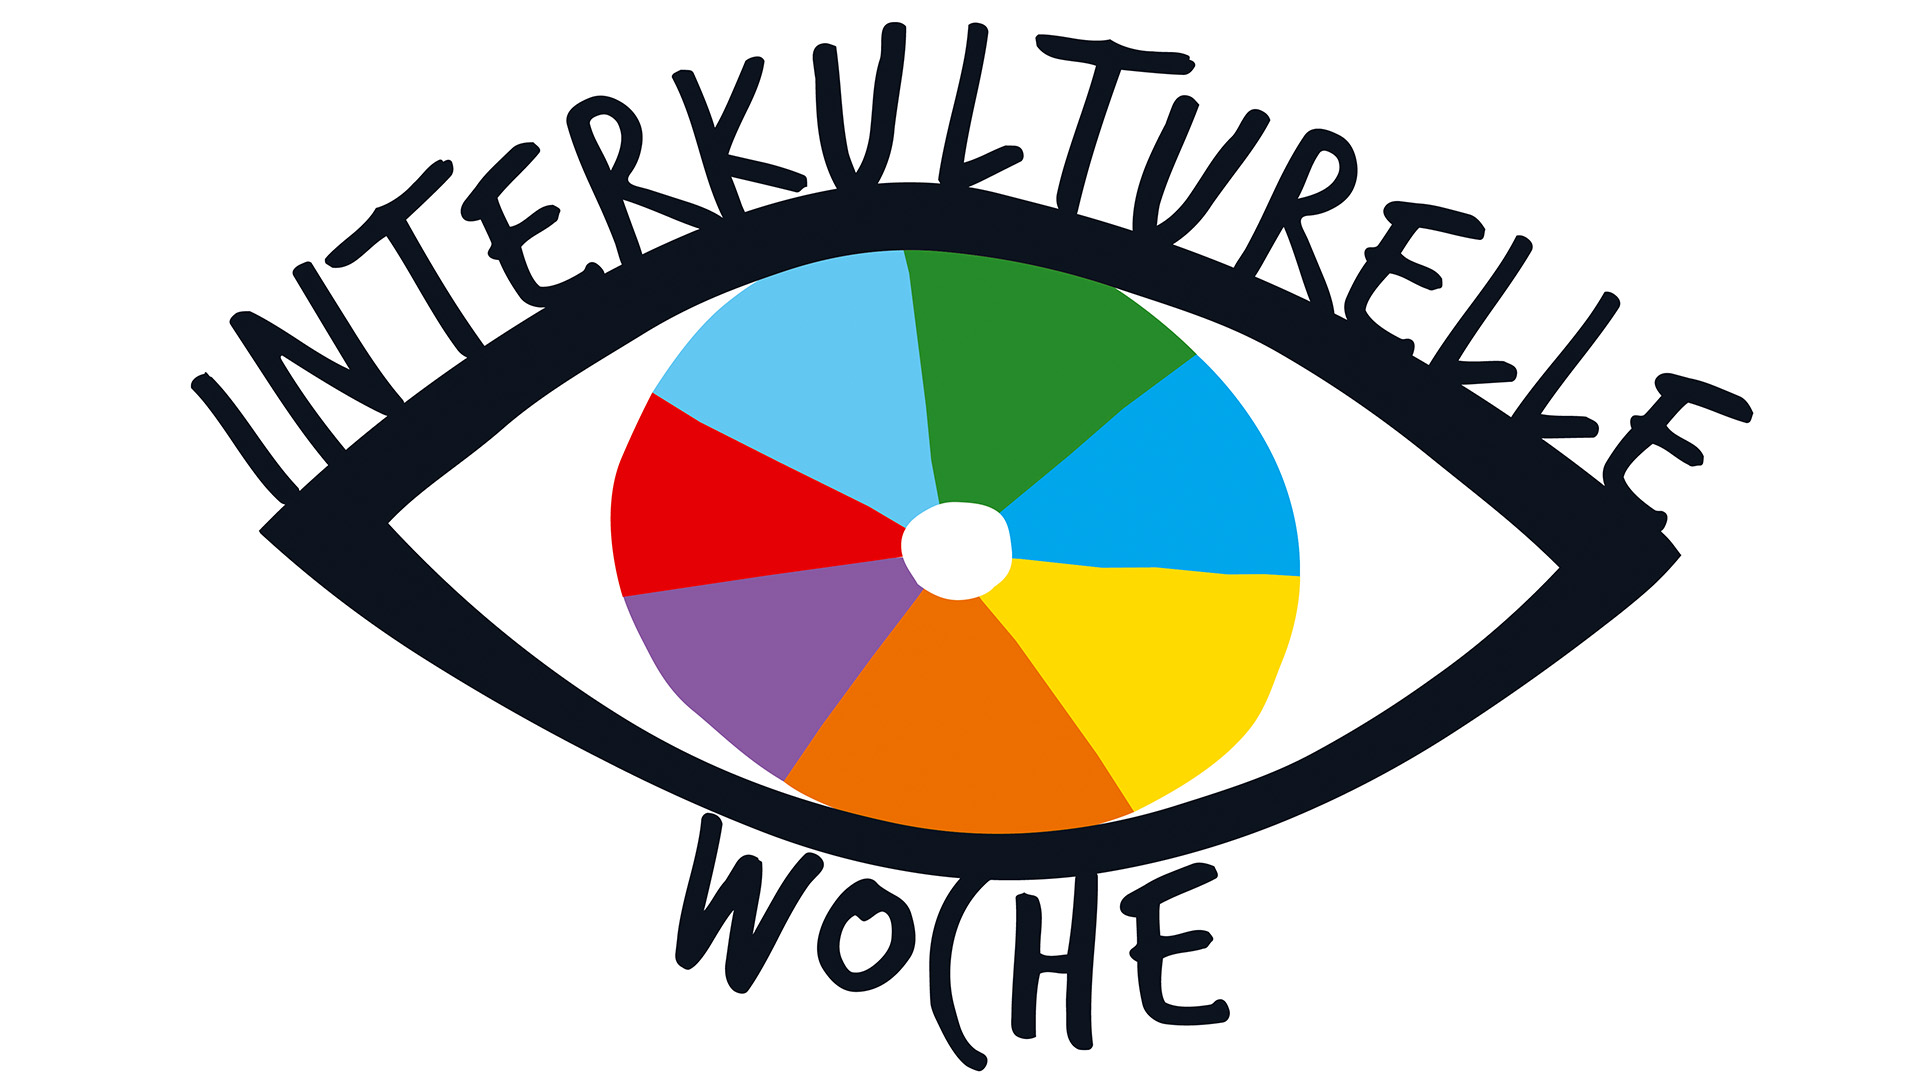 Ein skizziertes Auge: die Iris besteht aus sieben bunten Feldern, die Wimpern werden durch den Schriftzug "Interkulturelle Woche" dargestellt.